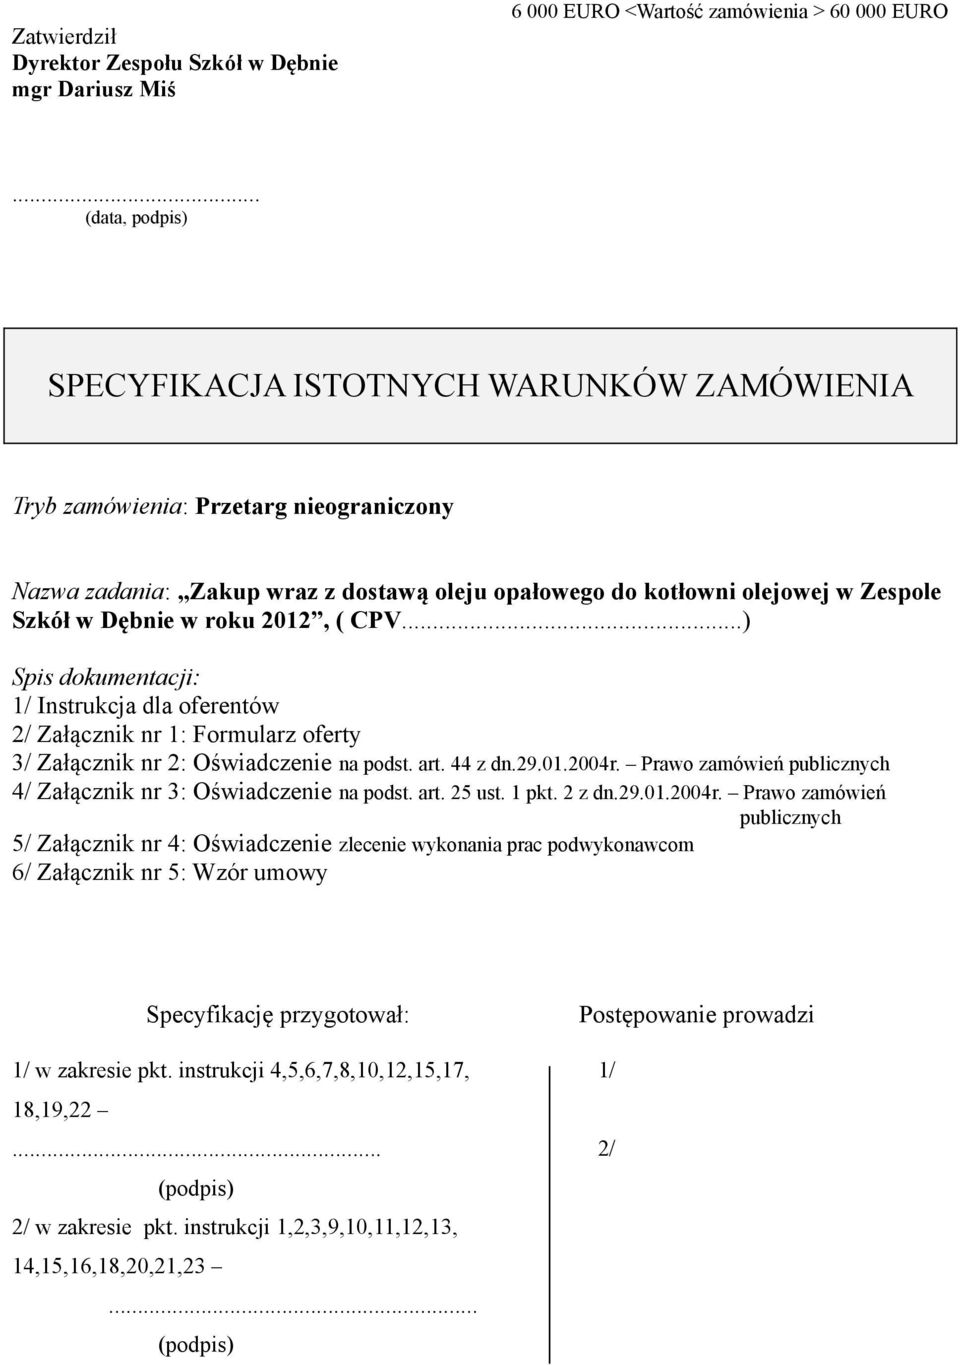 w roku 2012, ( CPV...) Spis dokumentacji: 1/ Instrukcja dla oferentów 2/ Załącznik nr 1: Formularz oferty 3/ Załącznik nr 2: Oświadczenie na podst. art. 44 z dn.29.01.2004r.